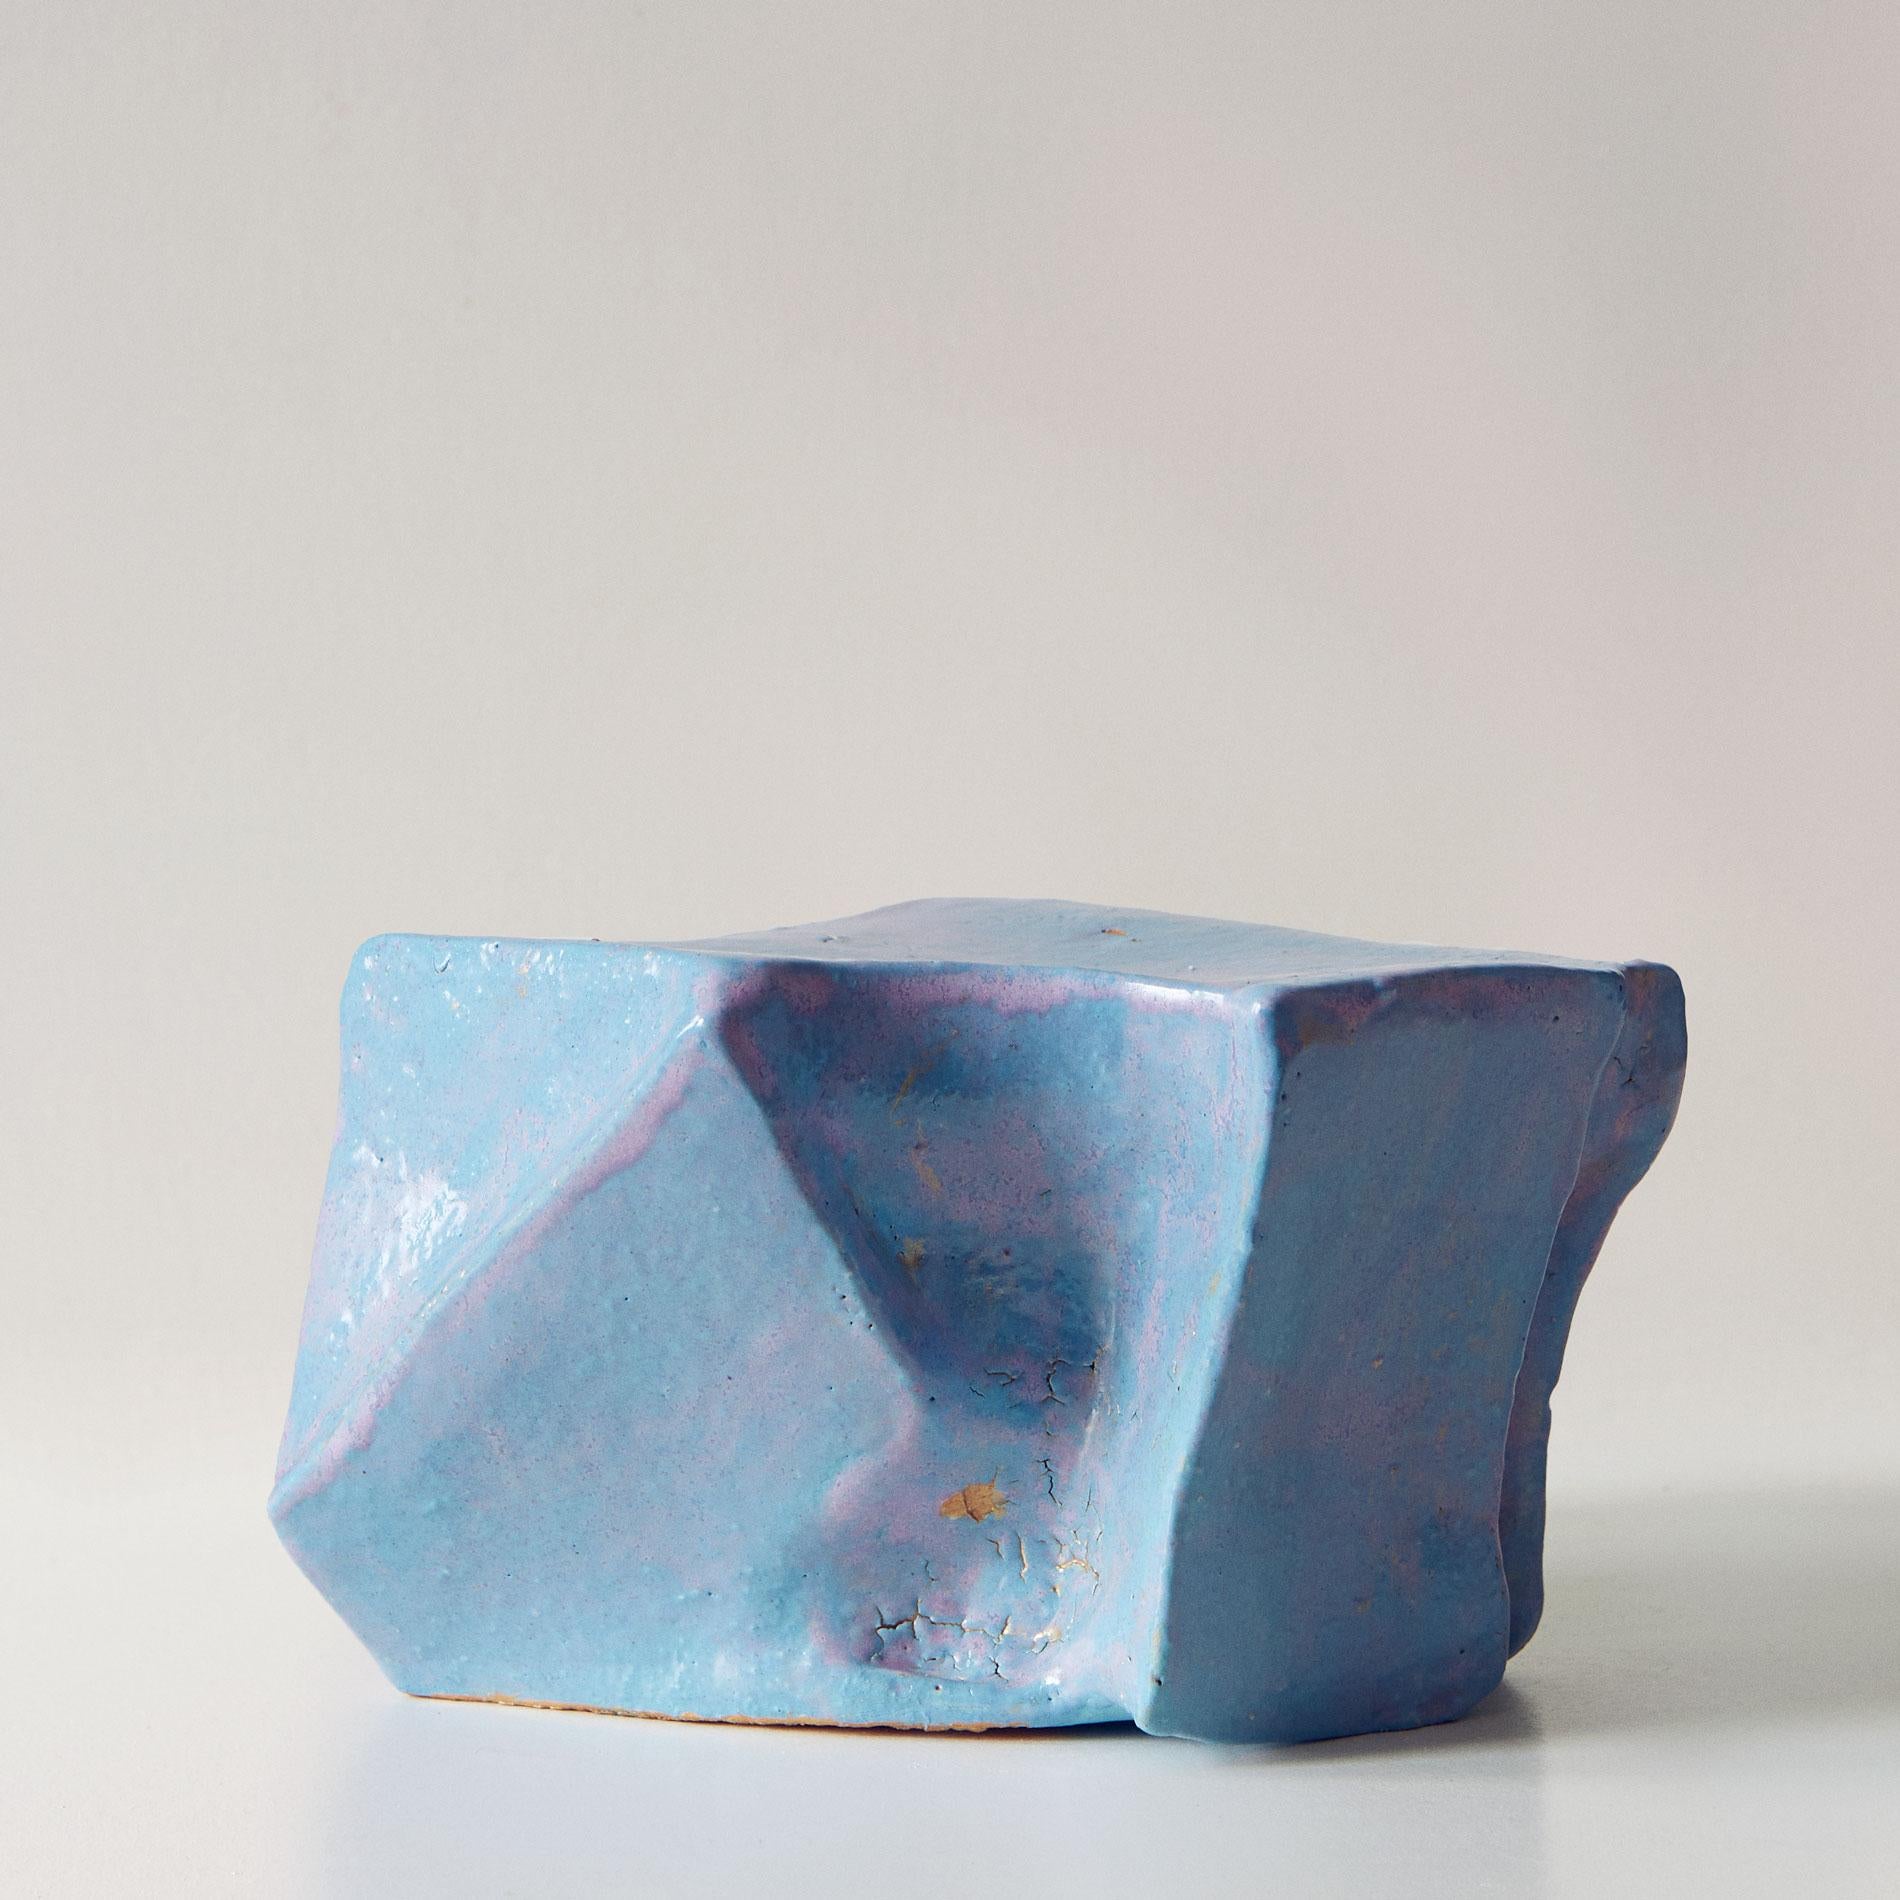 Abstract Sculpture Beatrice Galletley - Coussin de forme XV - Sculpture en cramique bleue abstraite moderne et minimaliste